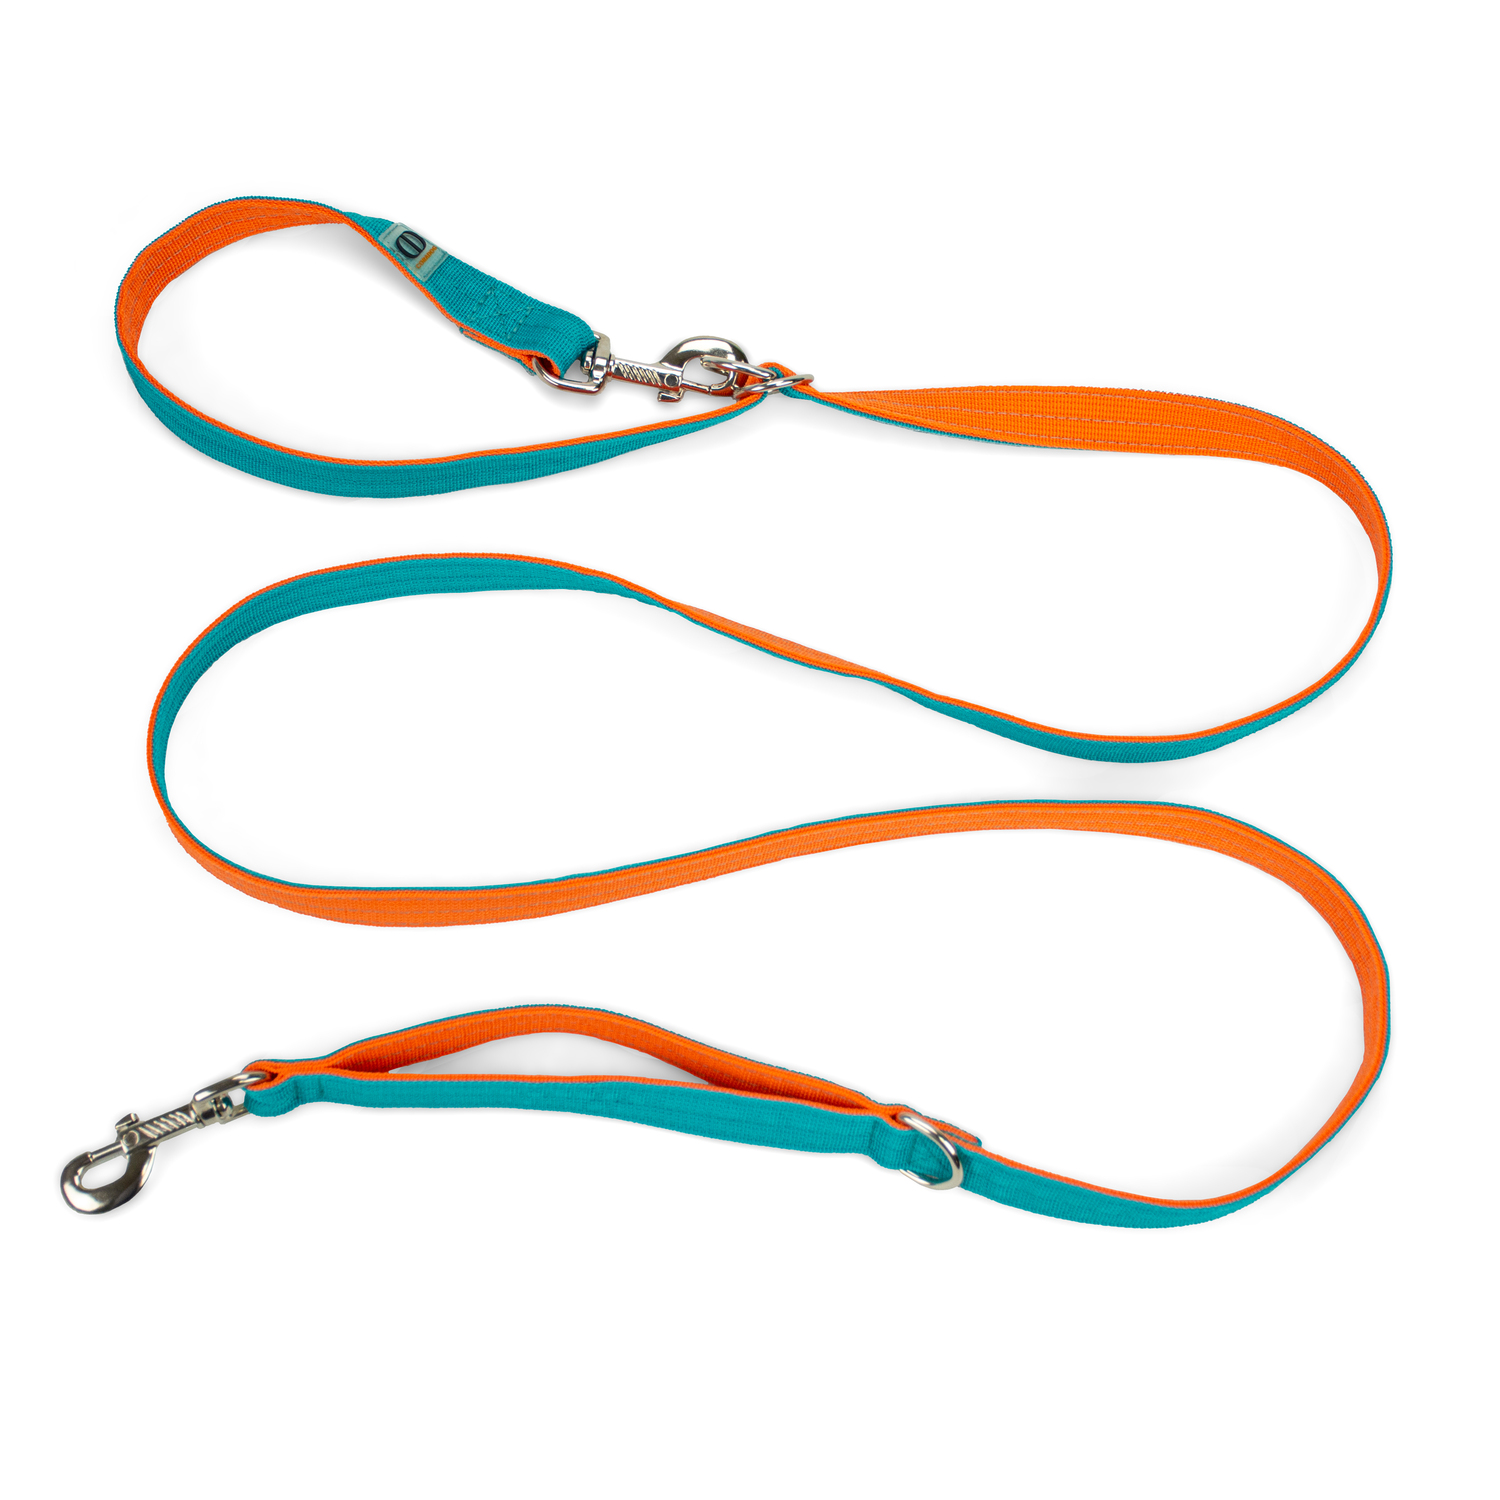 Поводок-перестежка с ручкой контролем и подвижным кольцом, CORADOG To and fro, 2,5м,  цвет бирюзовый, оранжевый